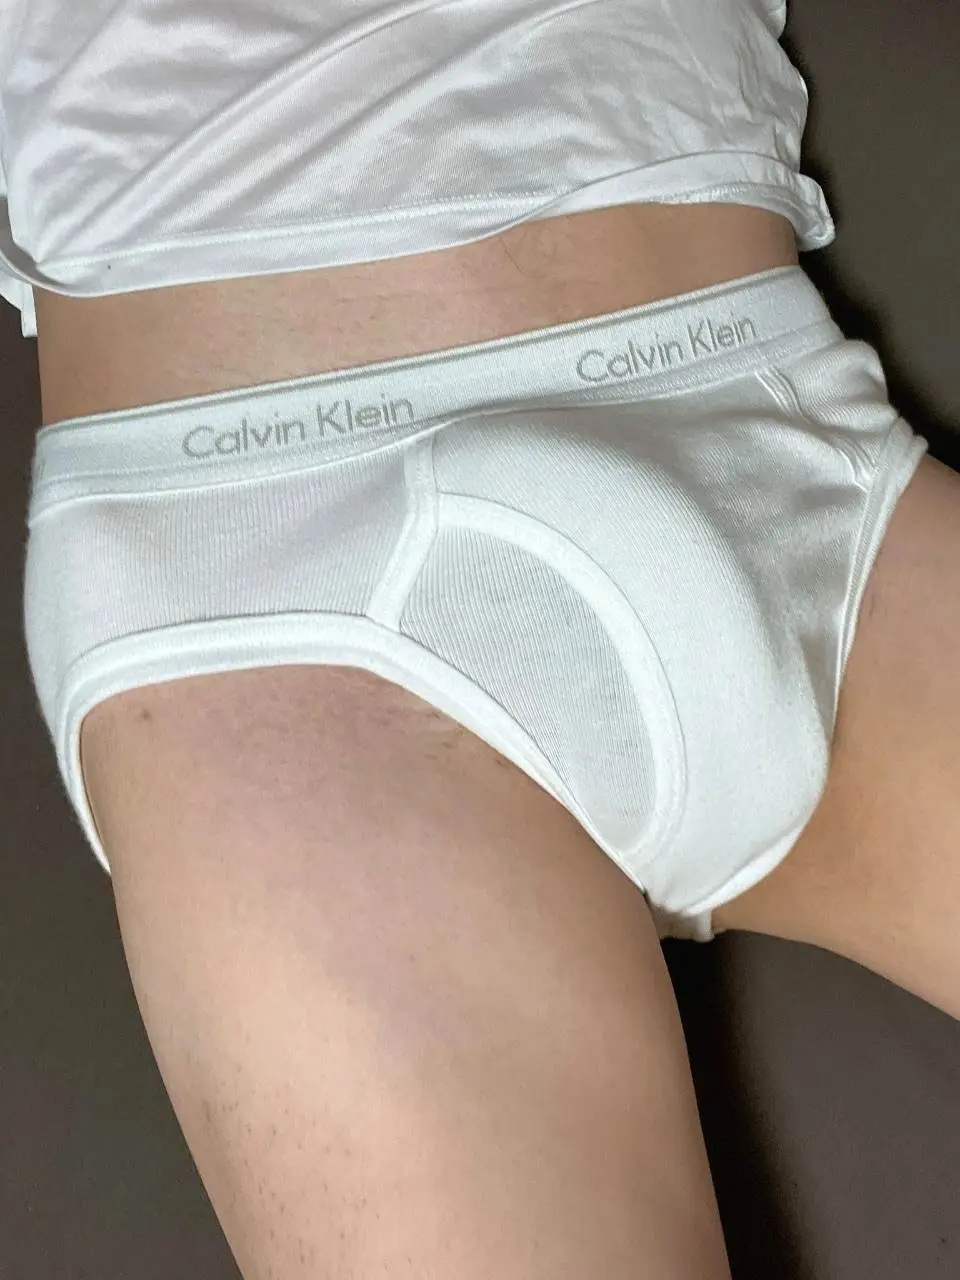 🩲 LINE OpenChat : Underwear For Men